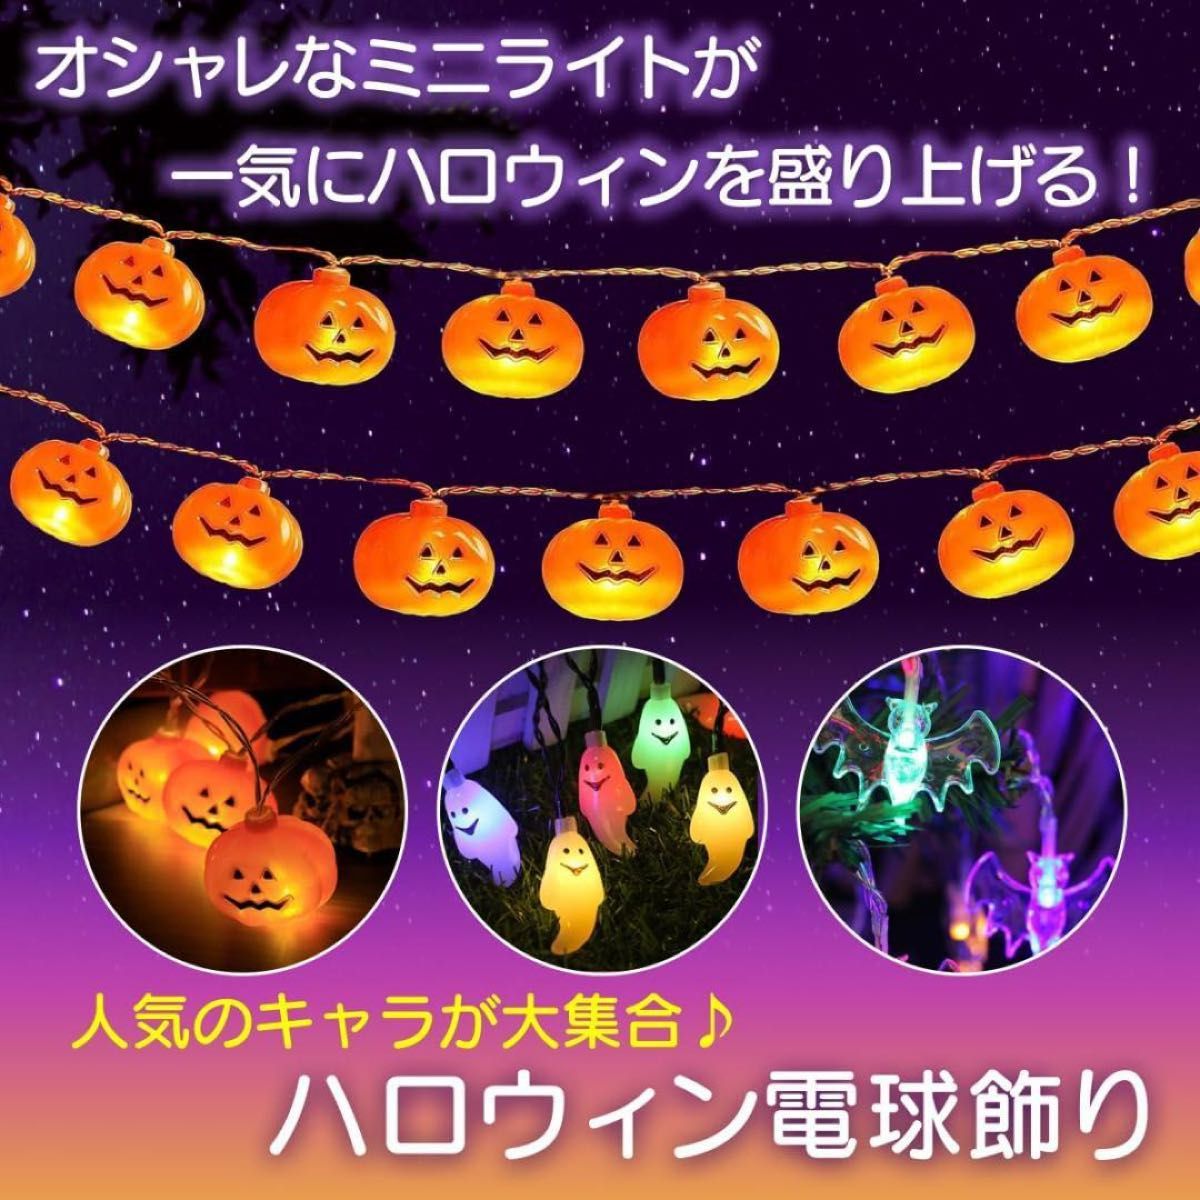 ハロウィン 飾り イルミネーション かぼちゃ パンプキン LED リモコン付